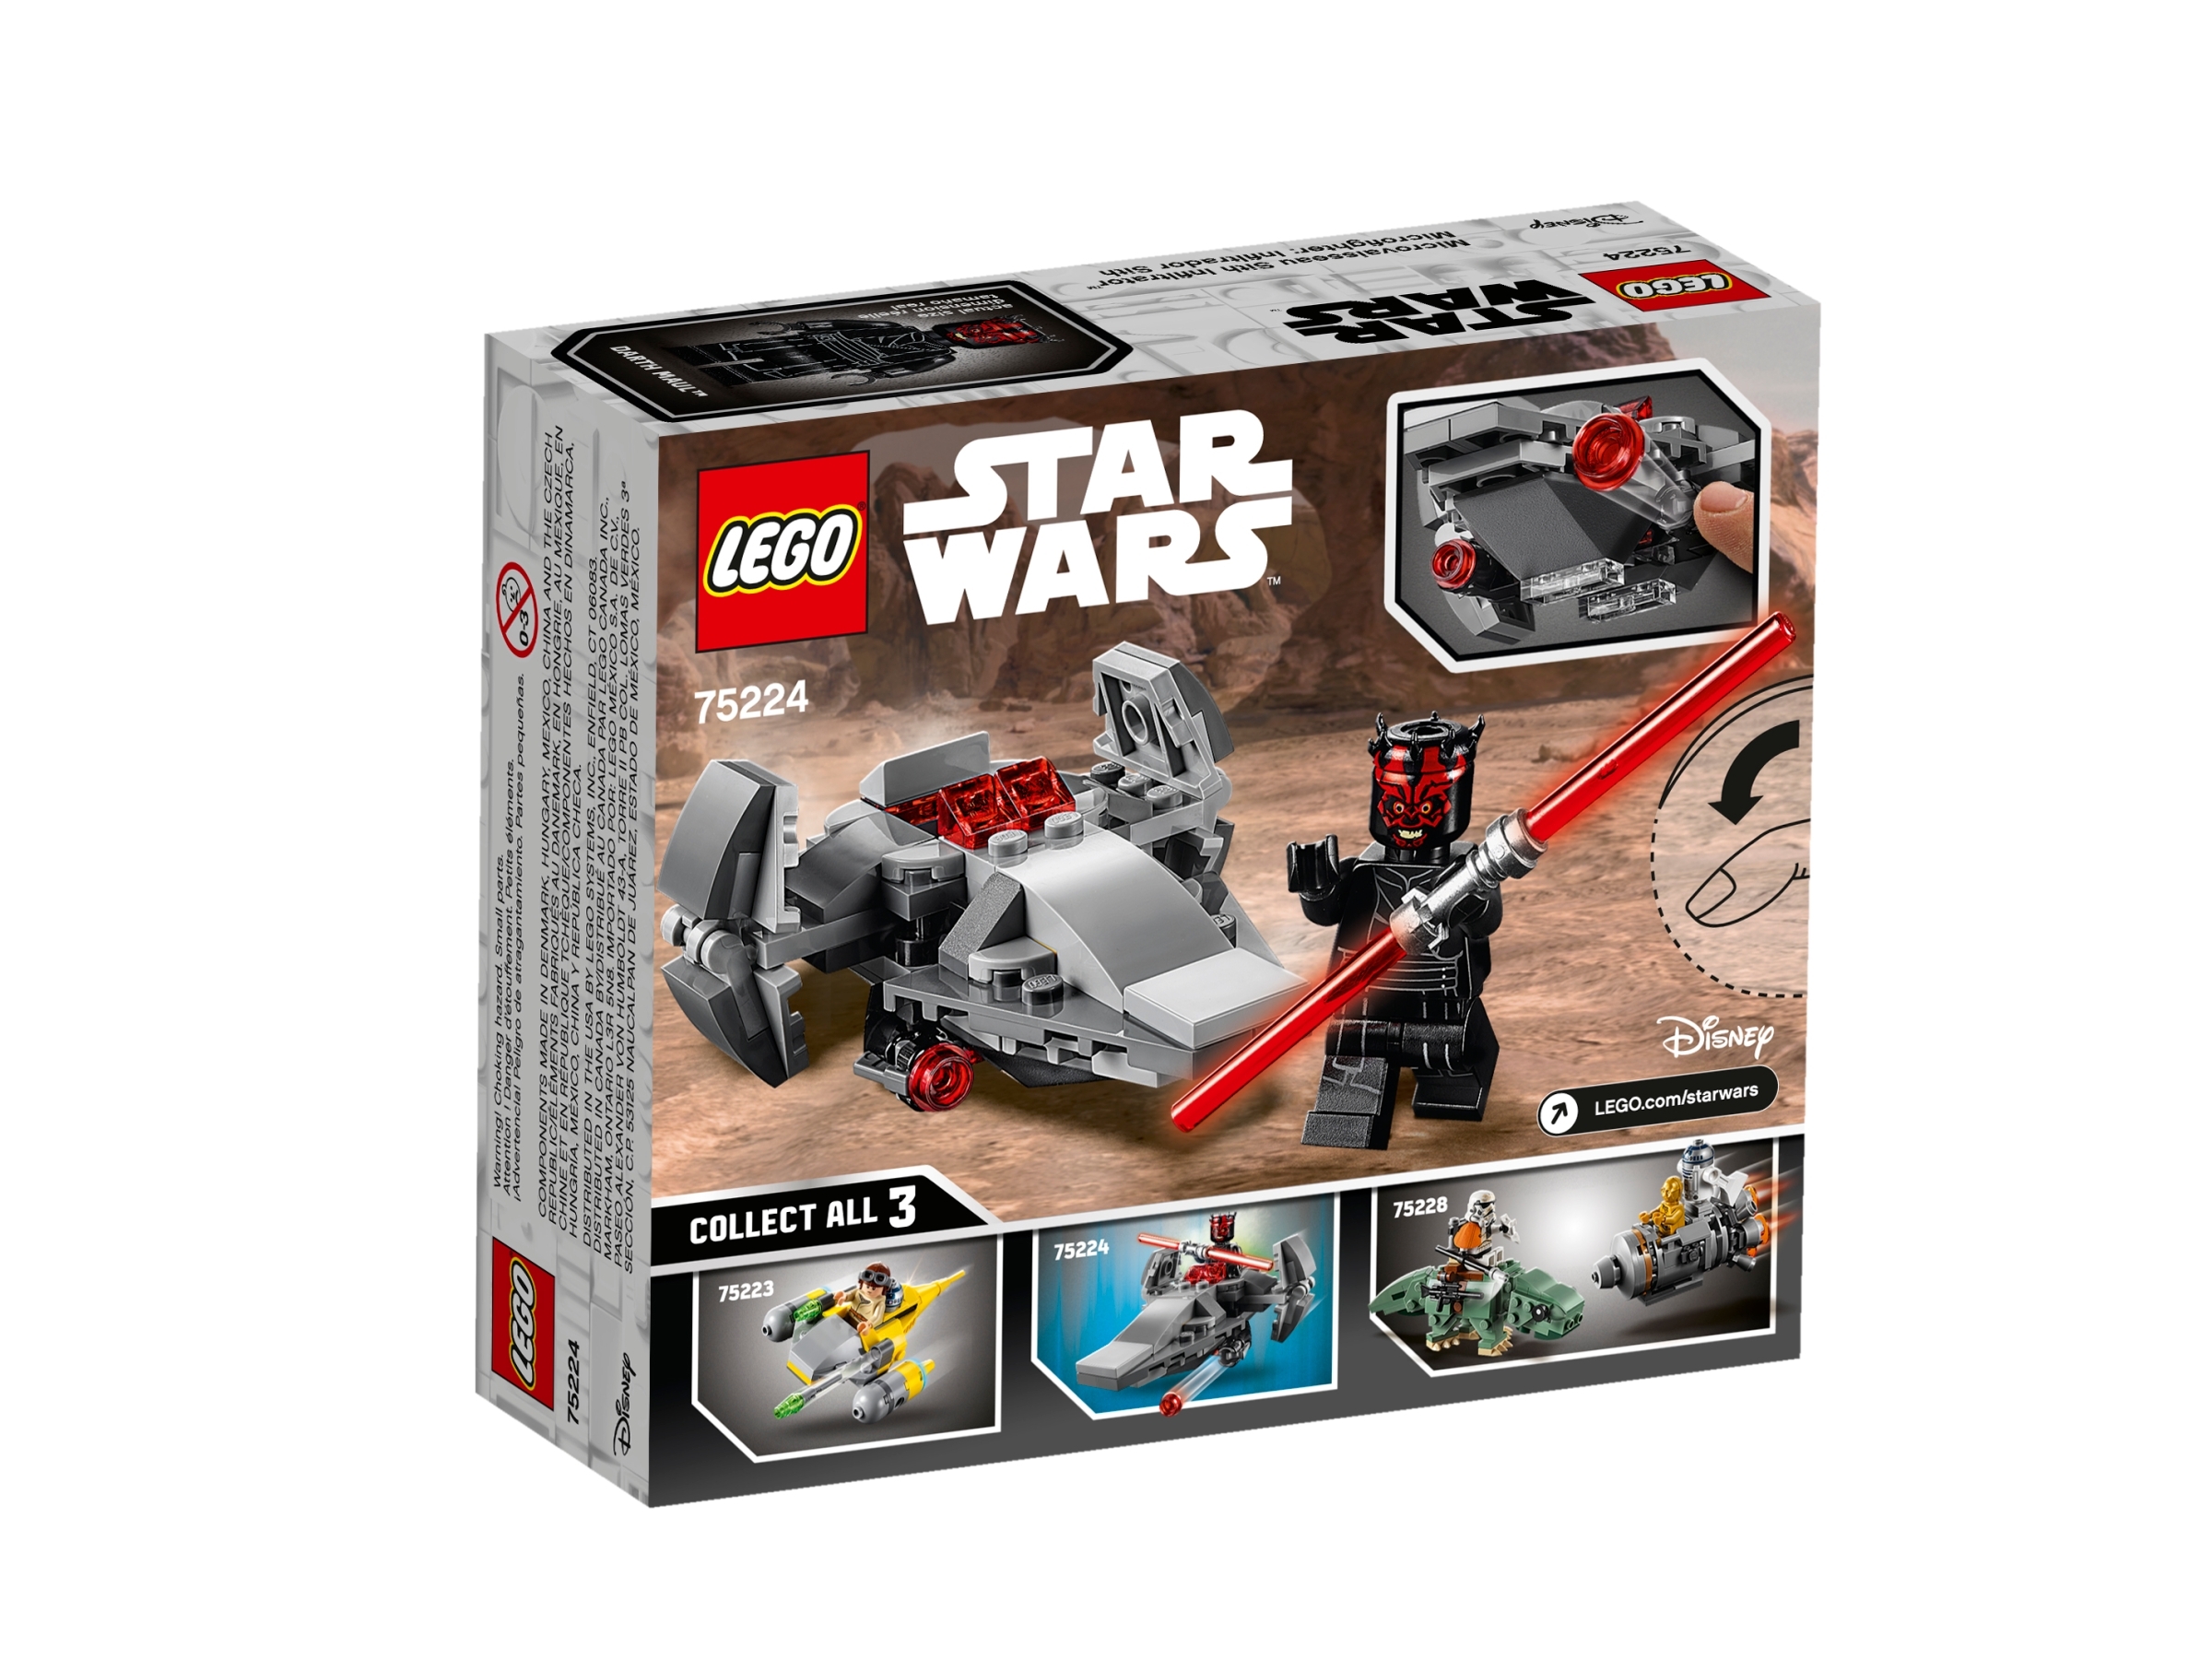 75224 Lego Star Wars Darth Maul Sith Infiltrator microfighter Conjunto Modelo-Nuevo Y En Caja 